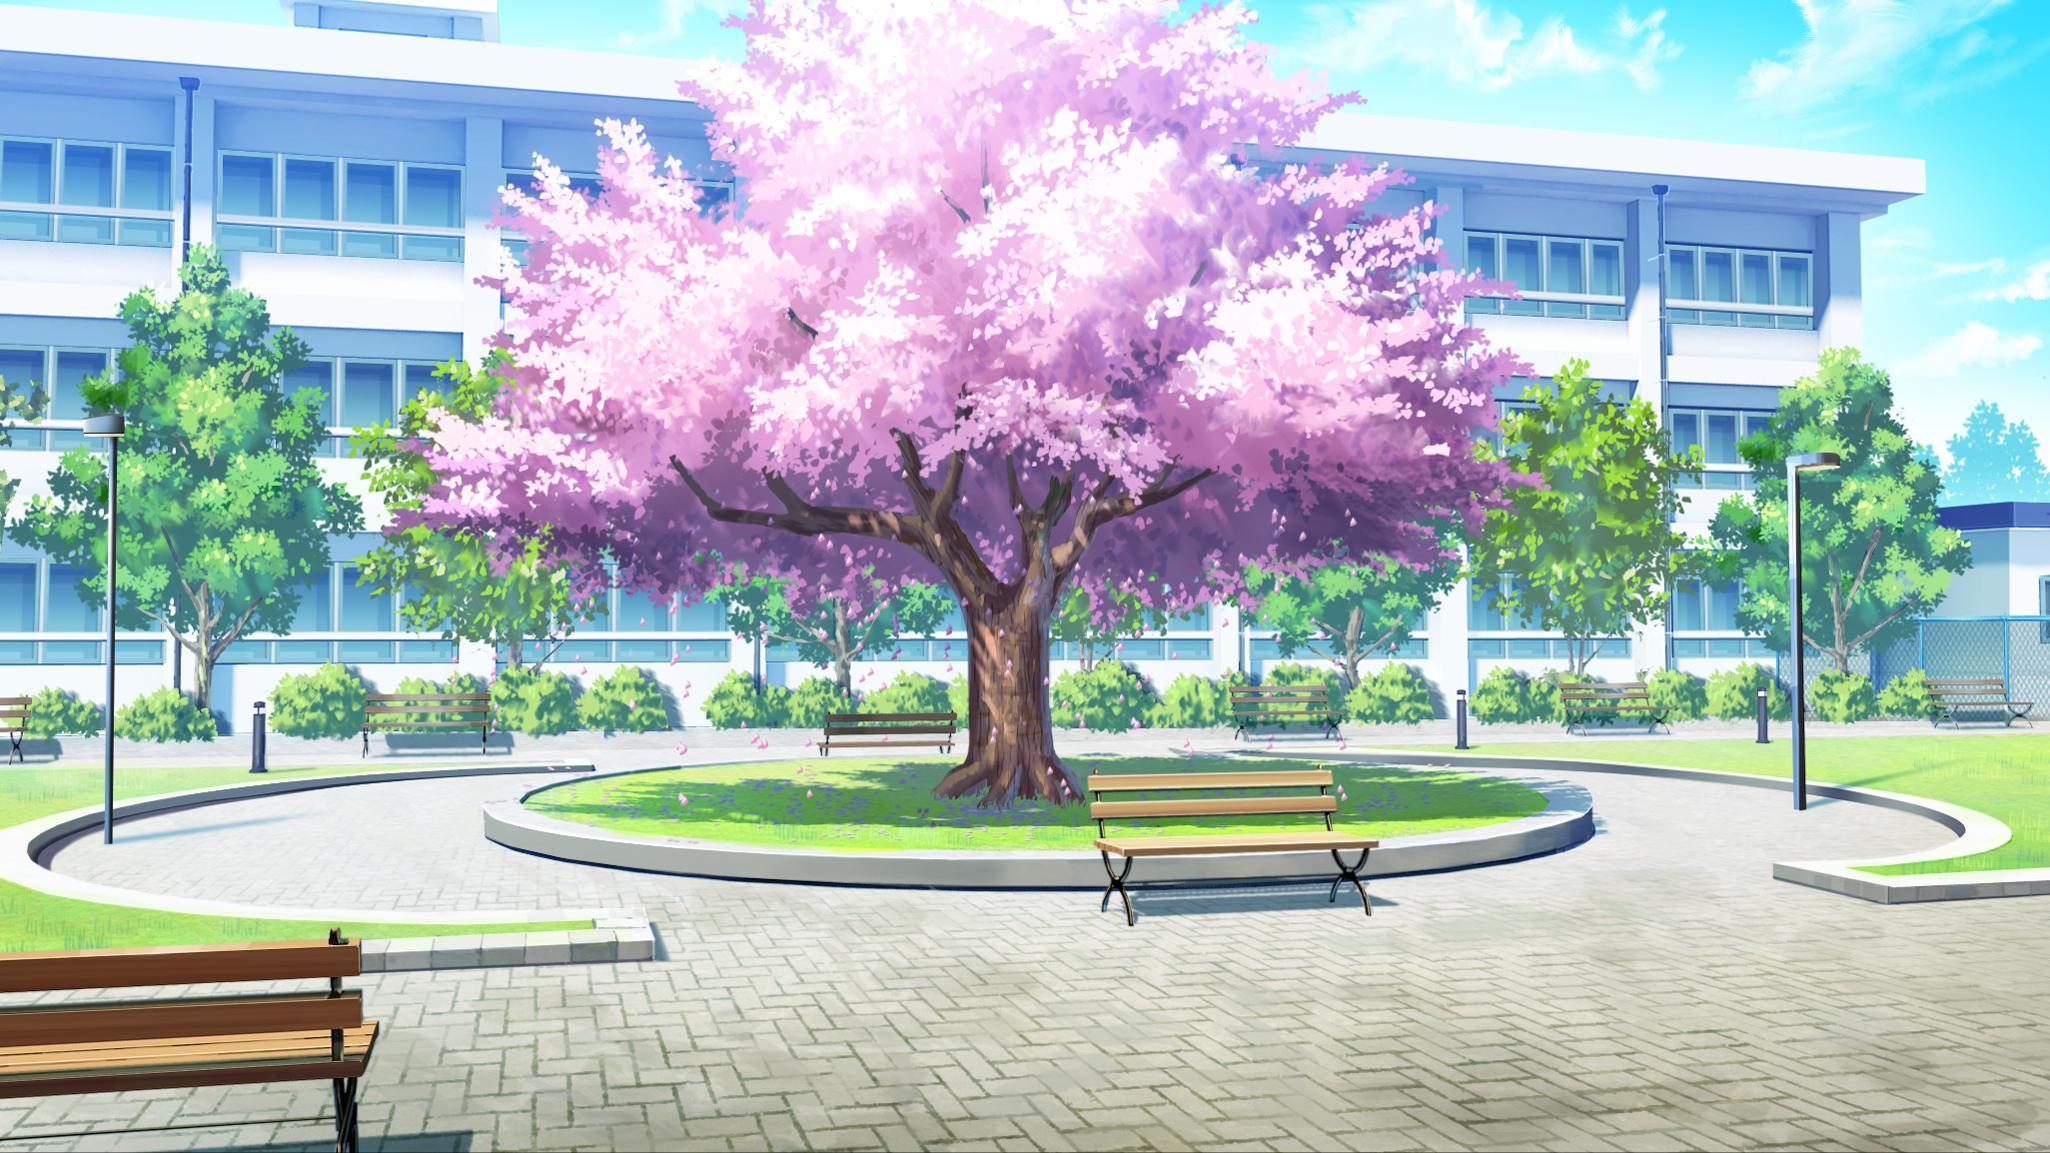 Anime School Scenery: Một thế giới anime đầy tiếng cười đang chờ đón bạn trong các bức tranh nền anime liên quan đến trường học. Thưởng thức những hình ảnh đẹp và sống động về trường học, bạn sẽ không muốn rời mắt khỏi màn hình.